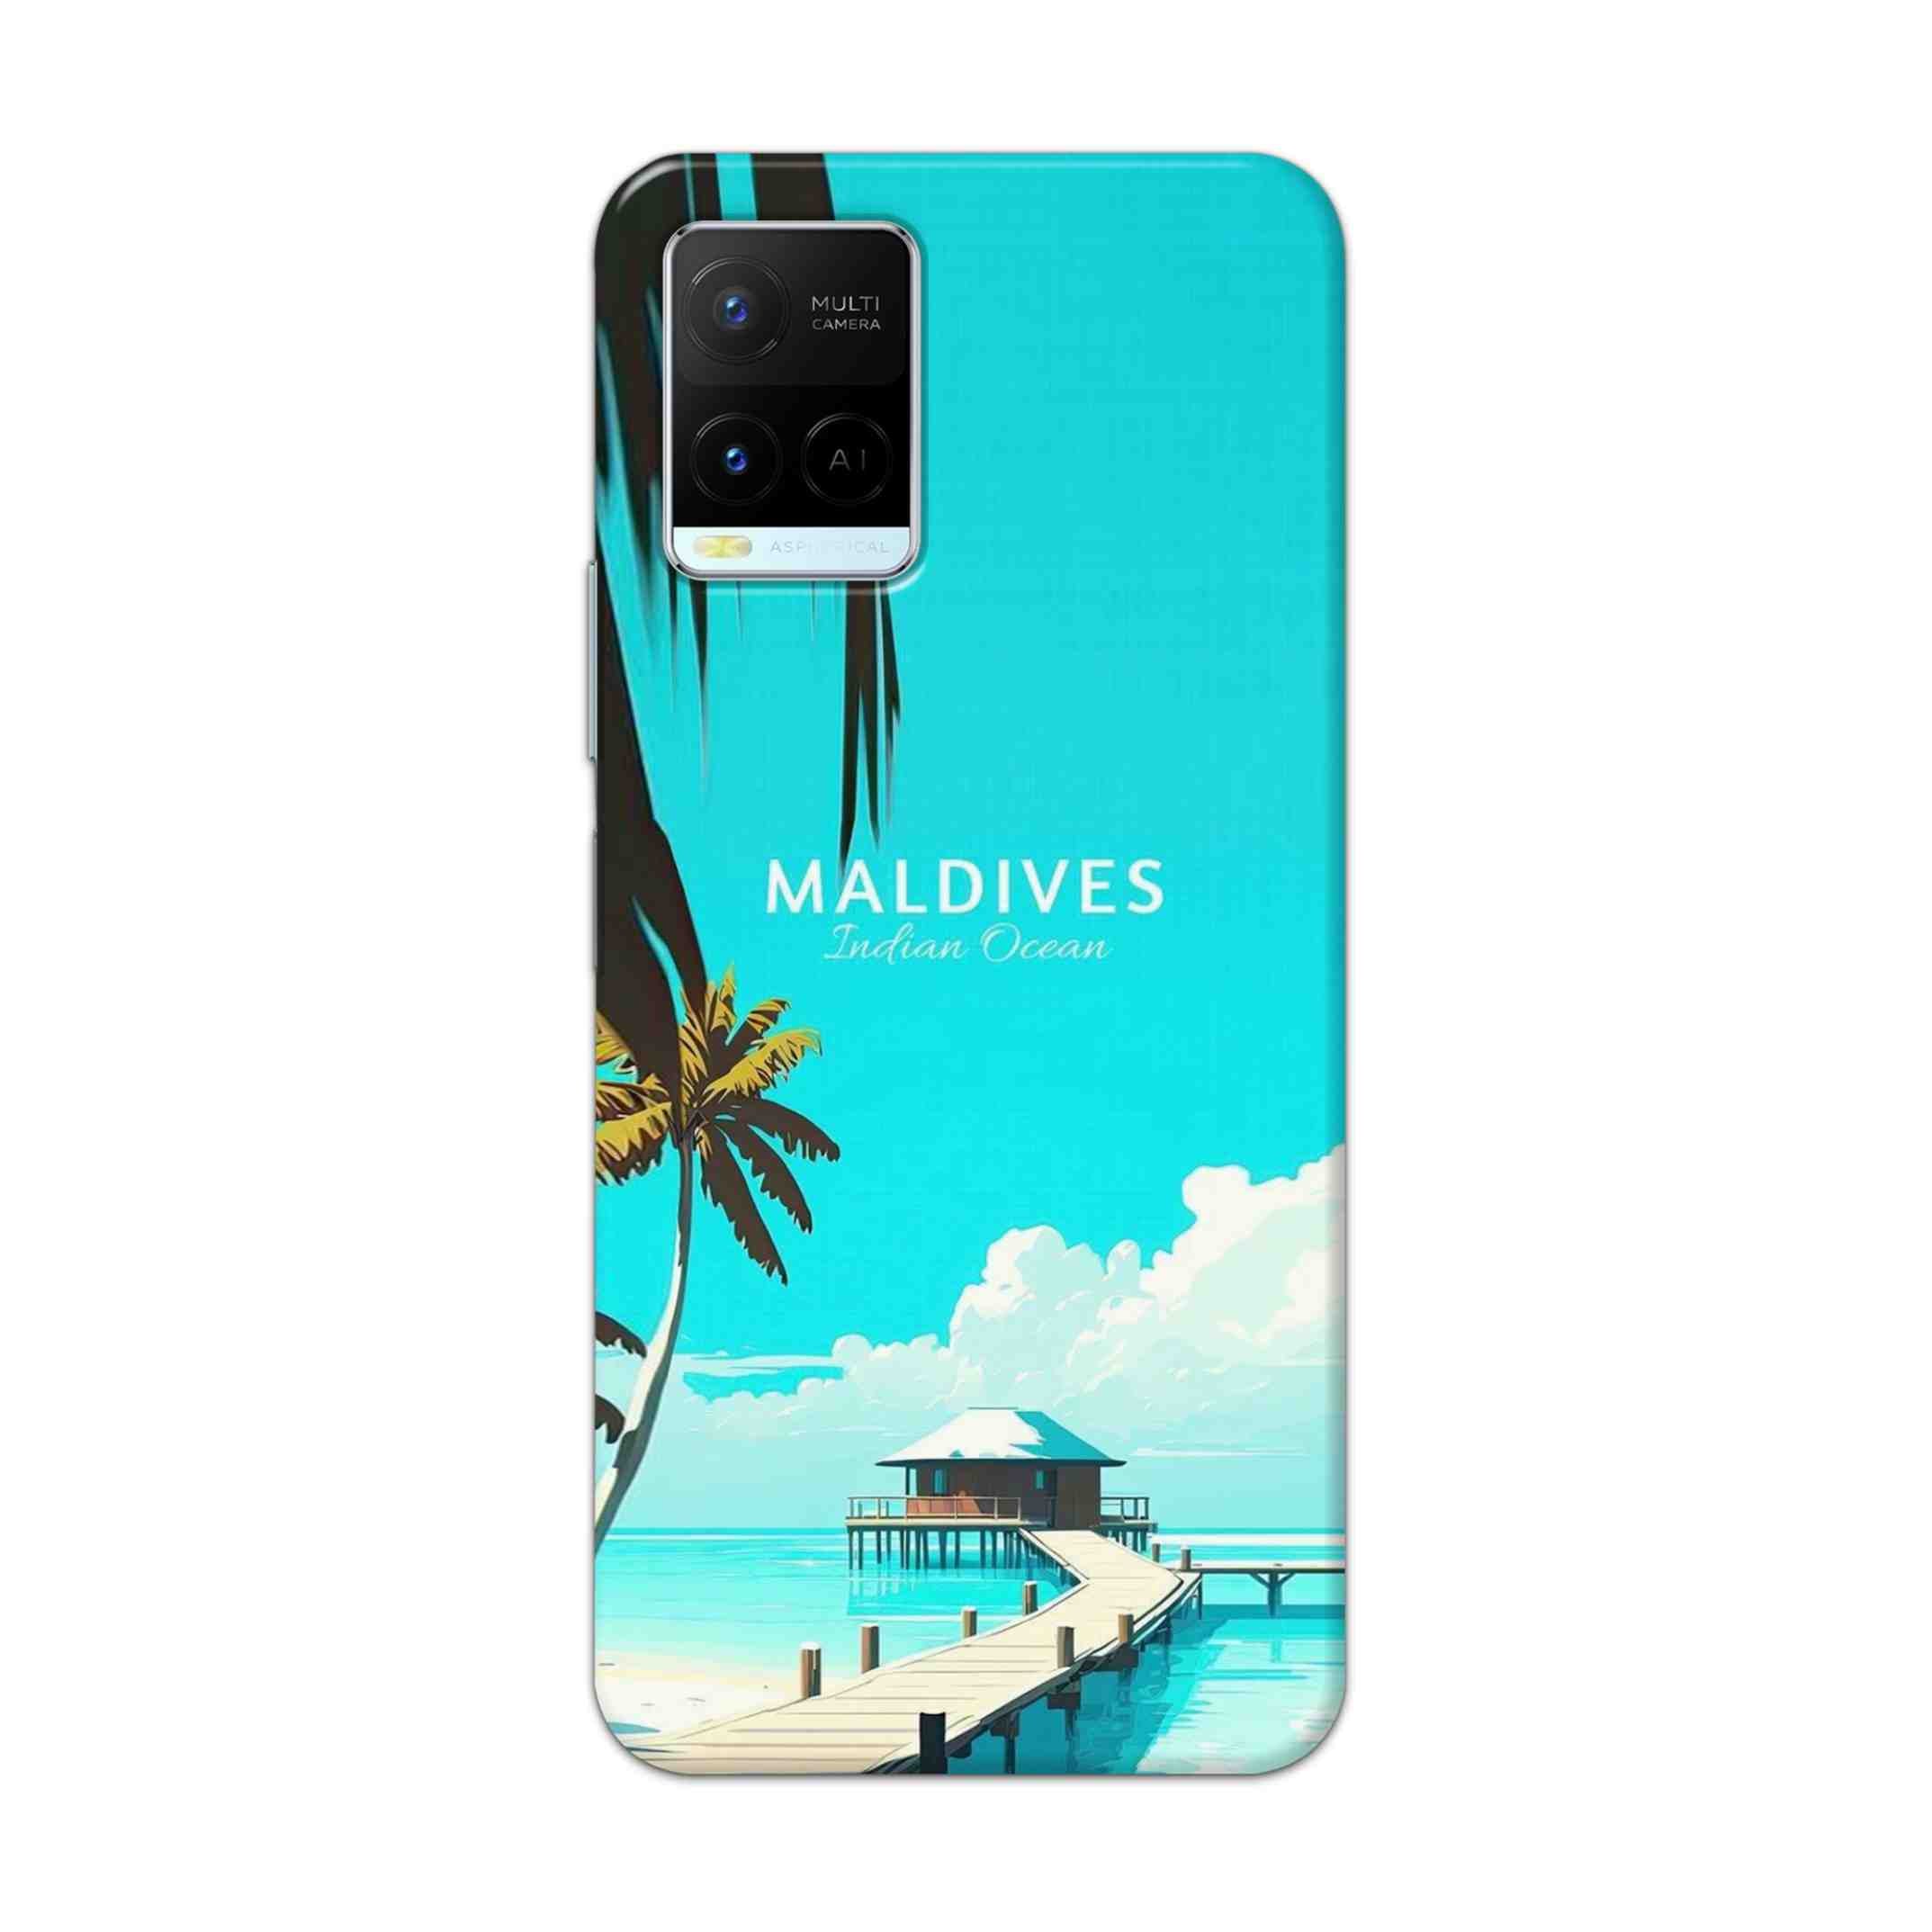 Buy Maldives Hard Back Mobile Phone Case Cover For Vivo Y21 2021 Online